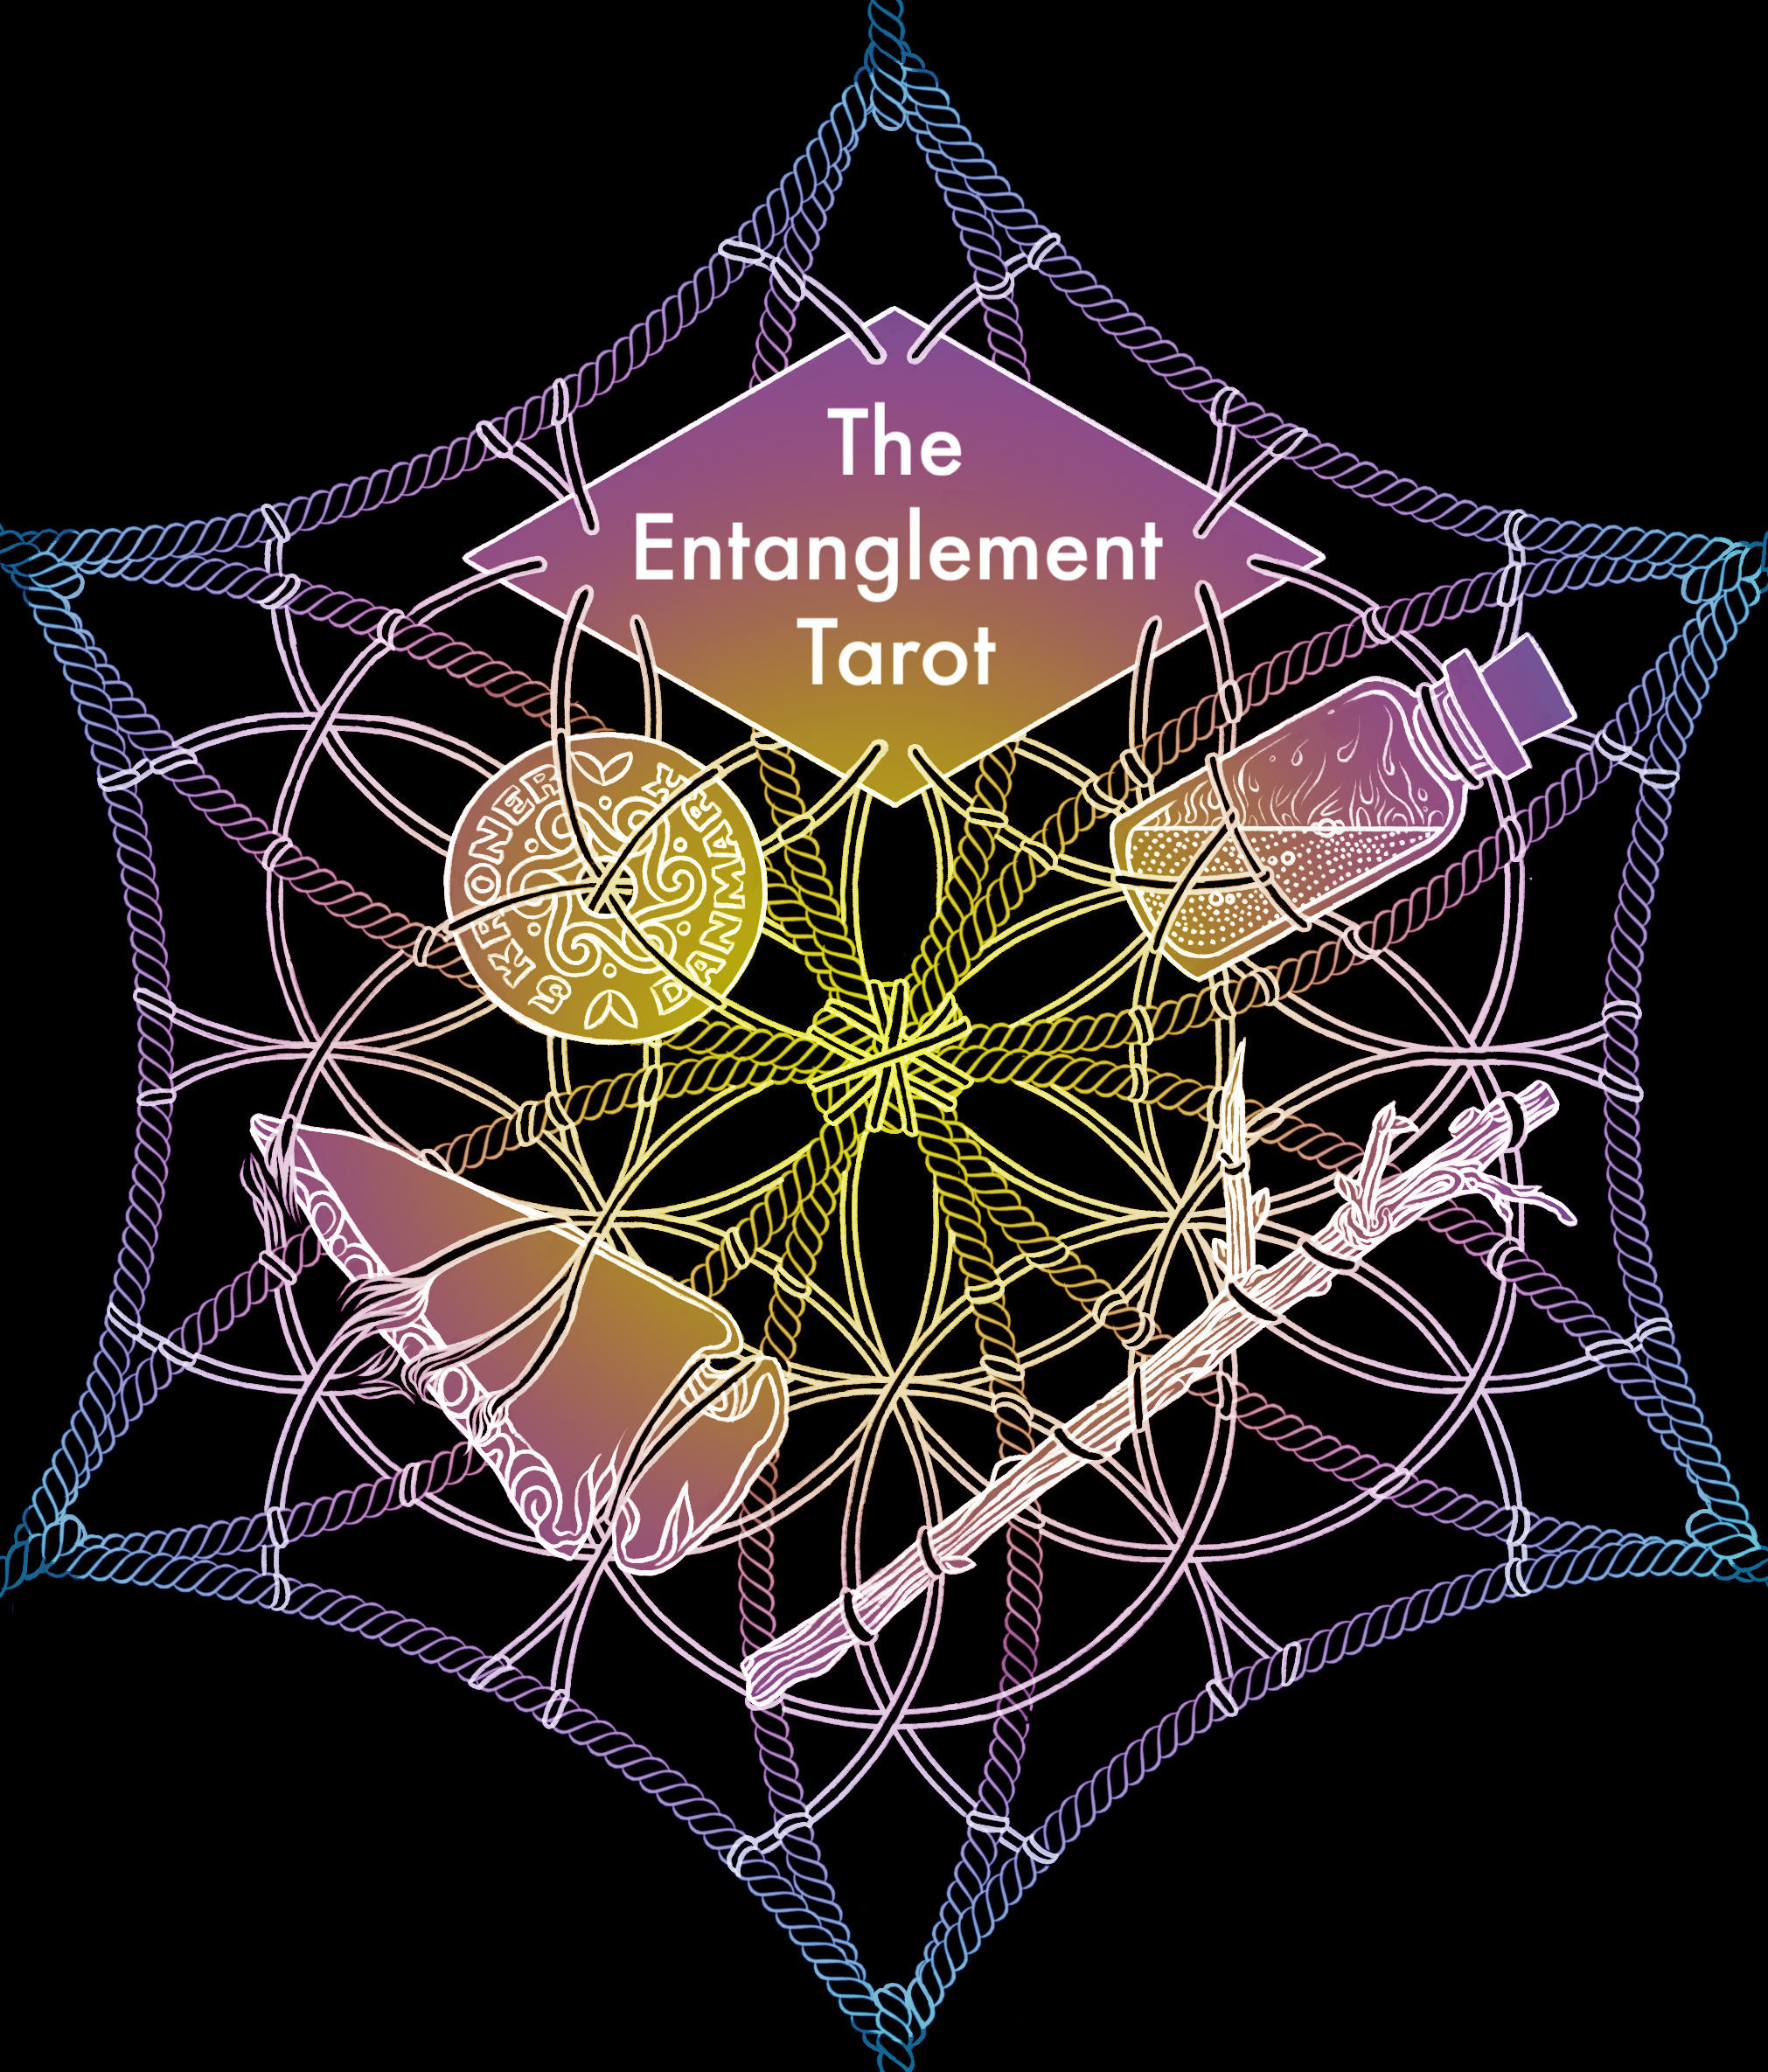 The Entanglement Tarot